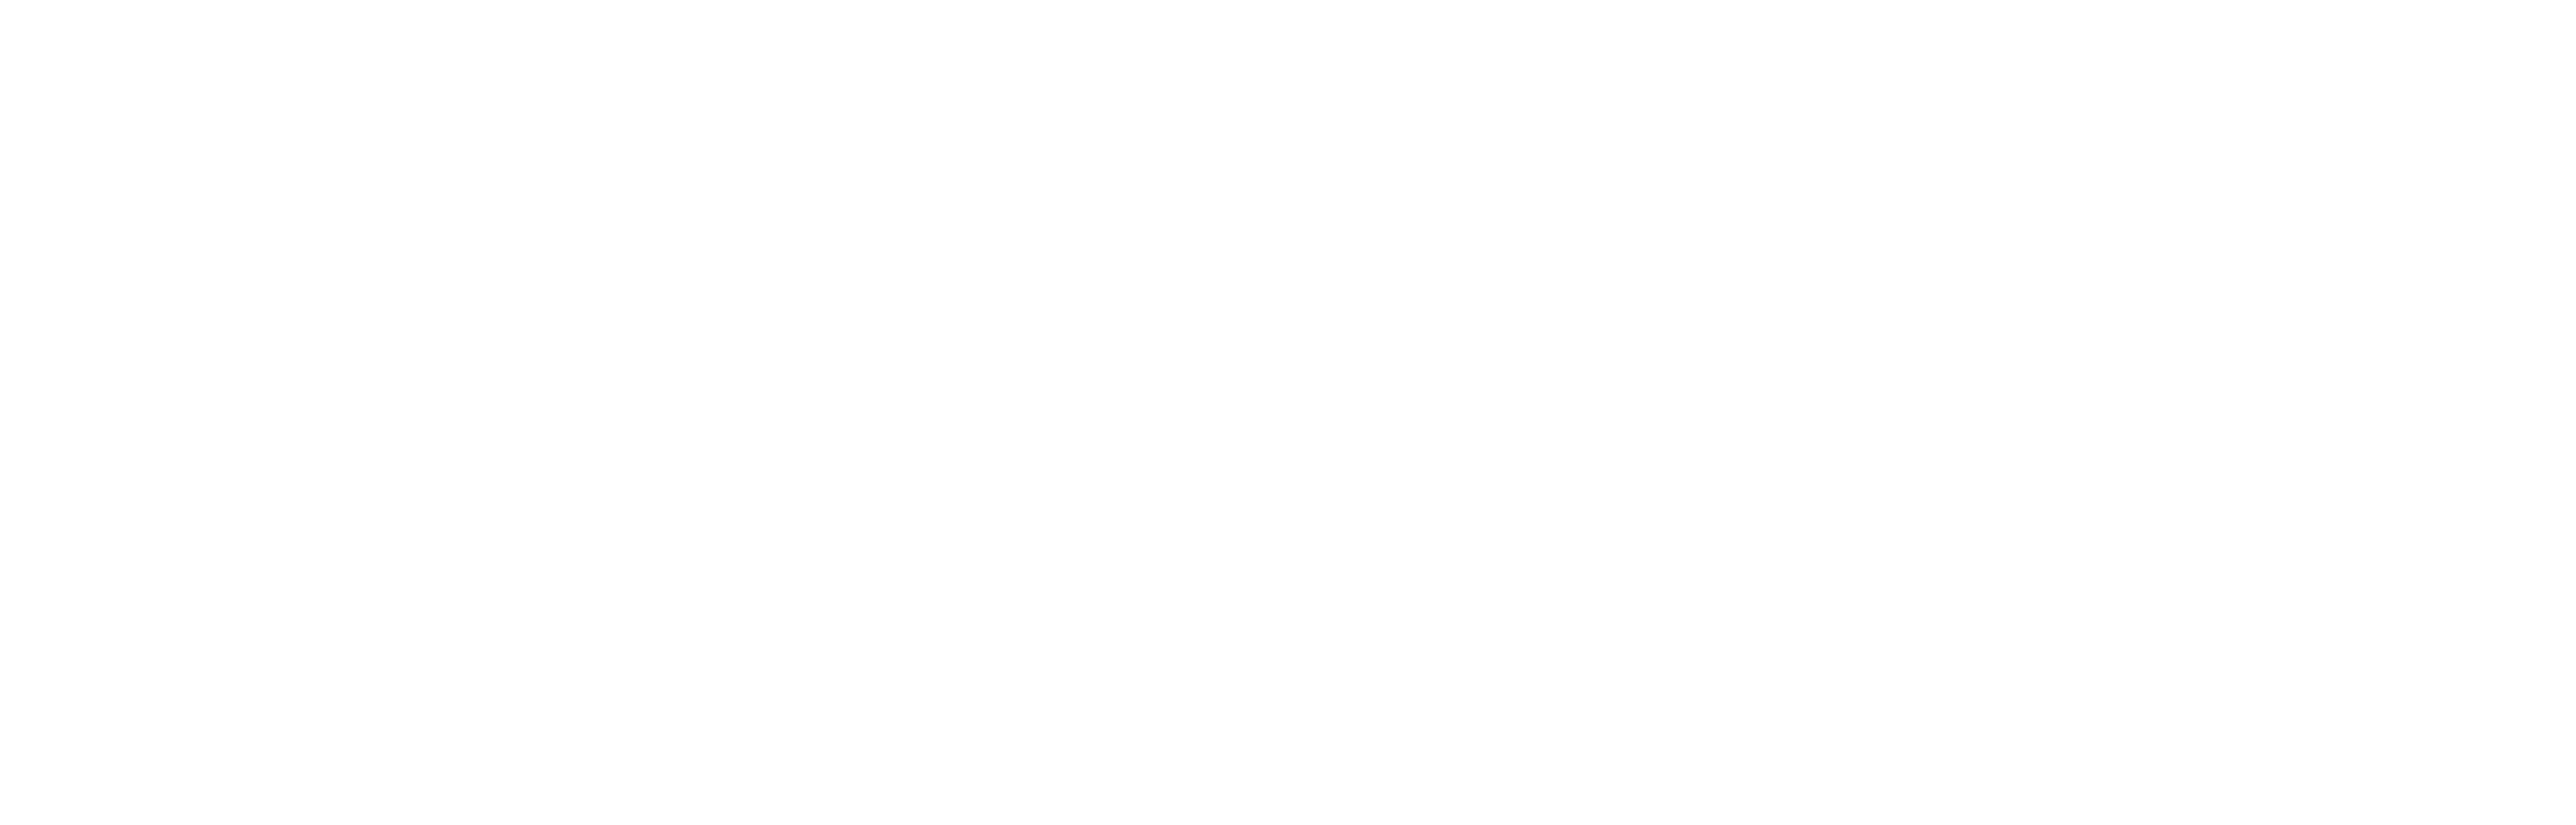 CELSCI-logo-white